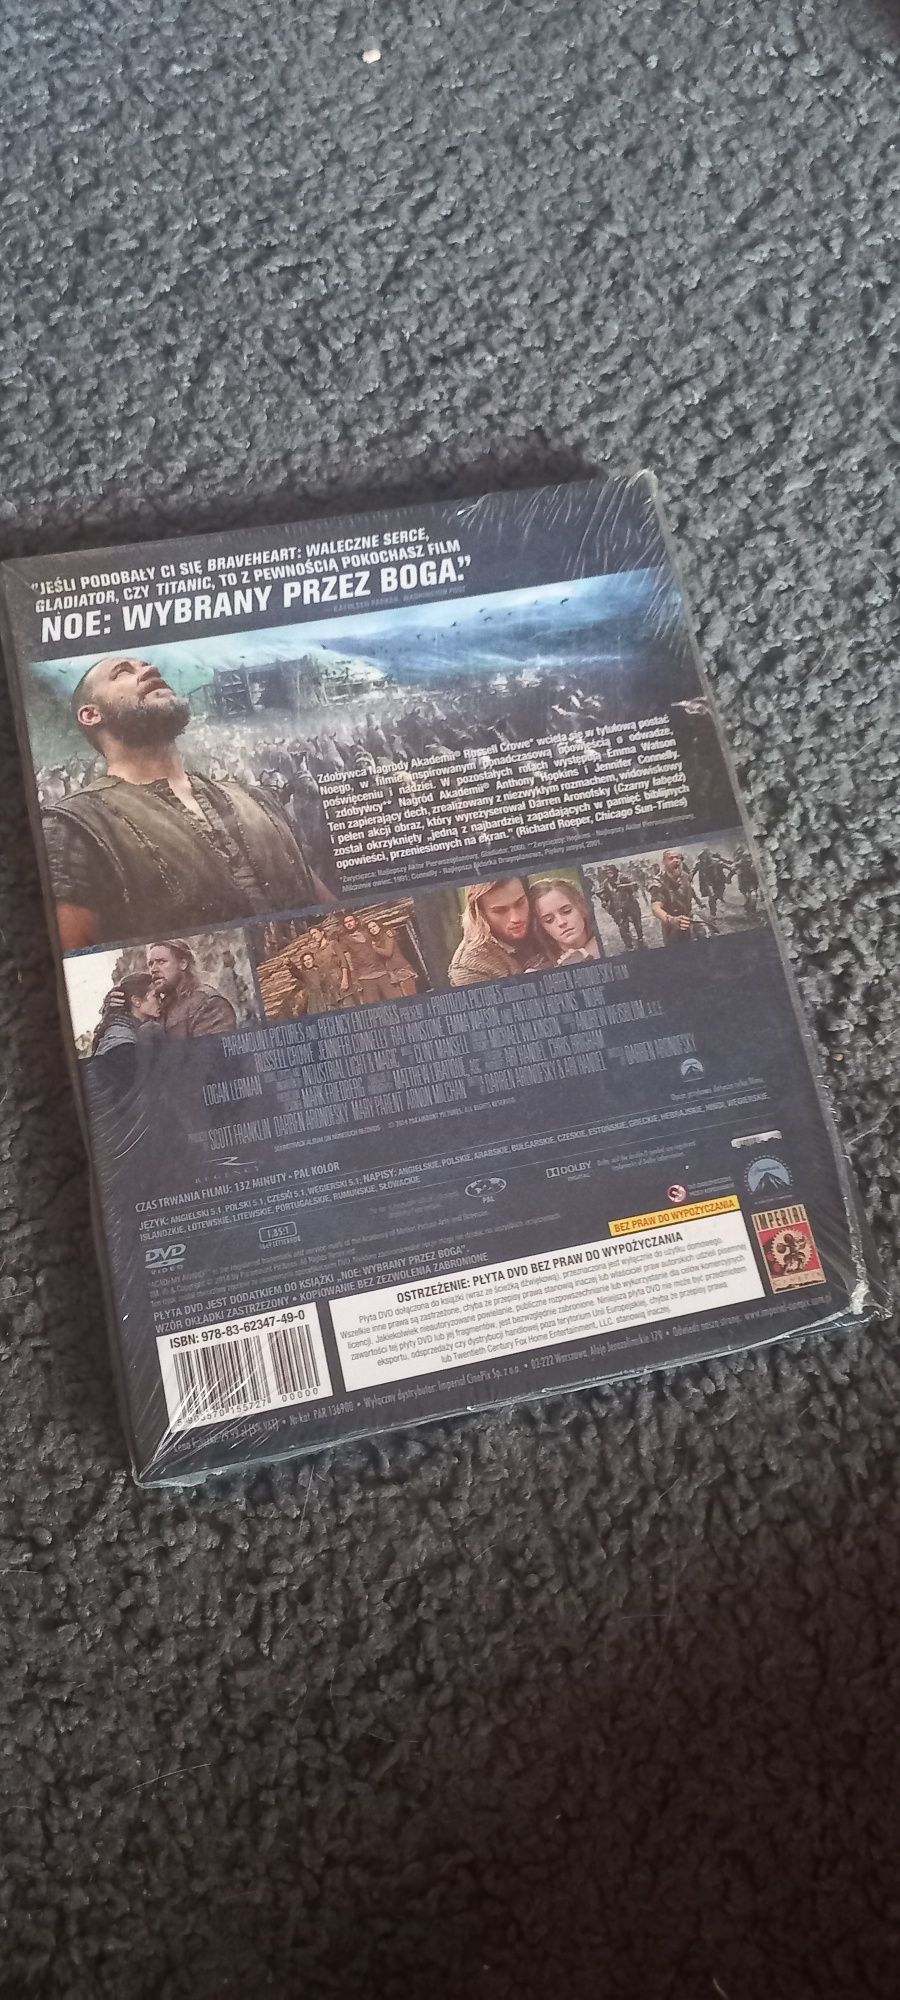 Noe Russell Crowe dvd